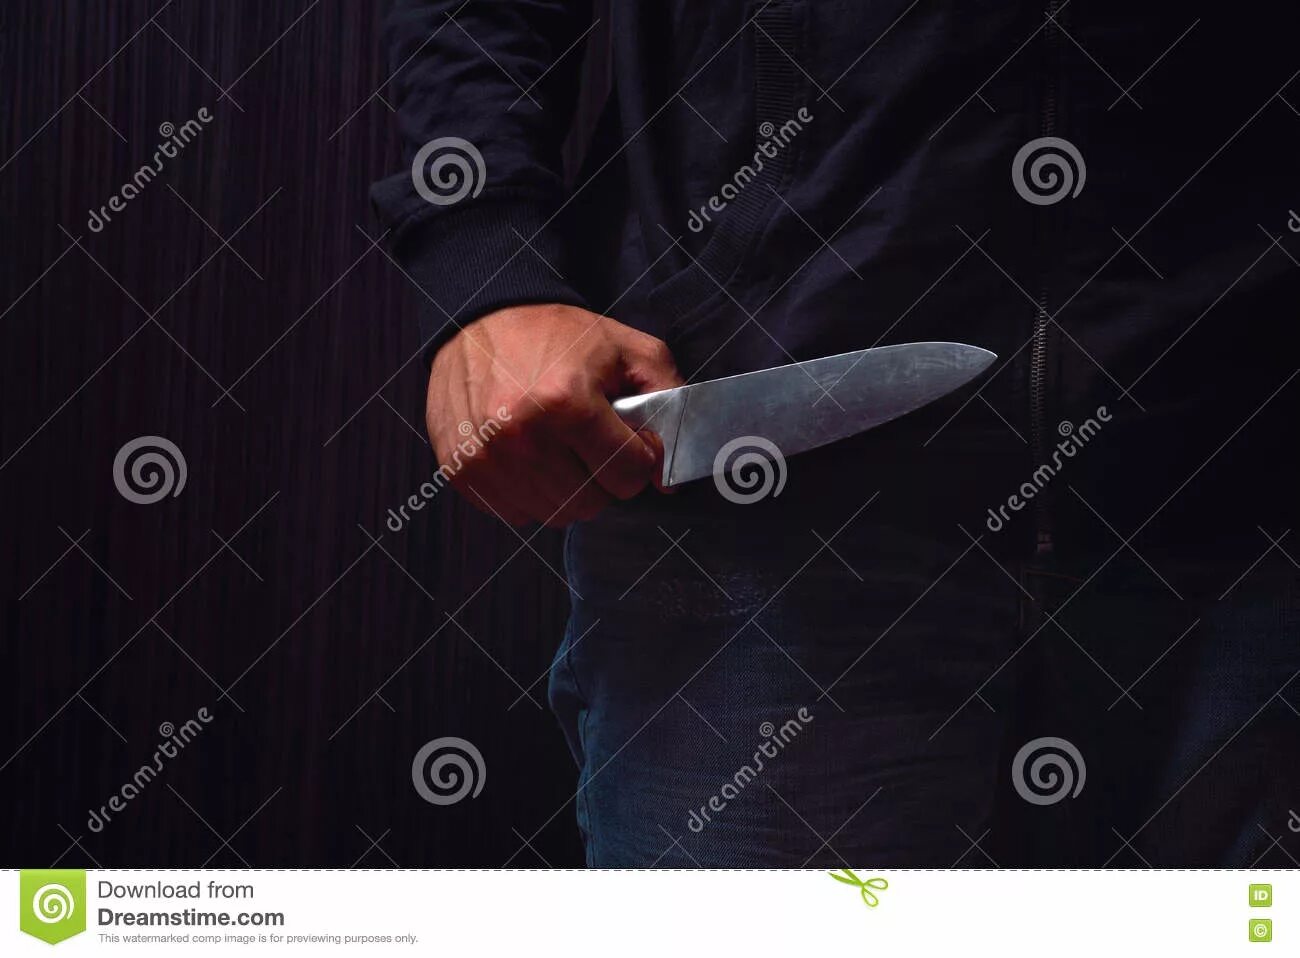 Вокруг ножевые. Девушка держит нож.